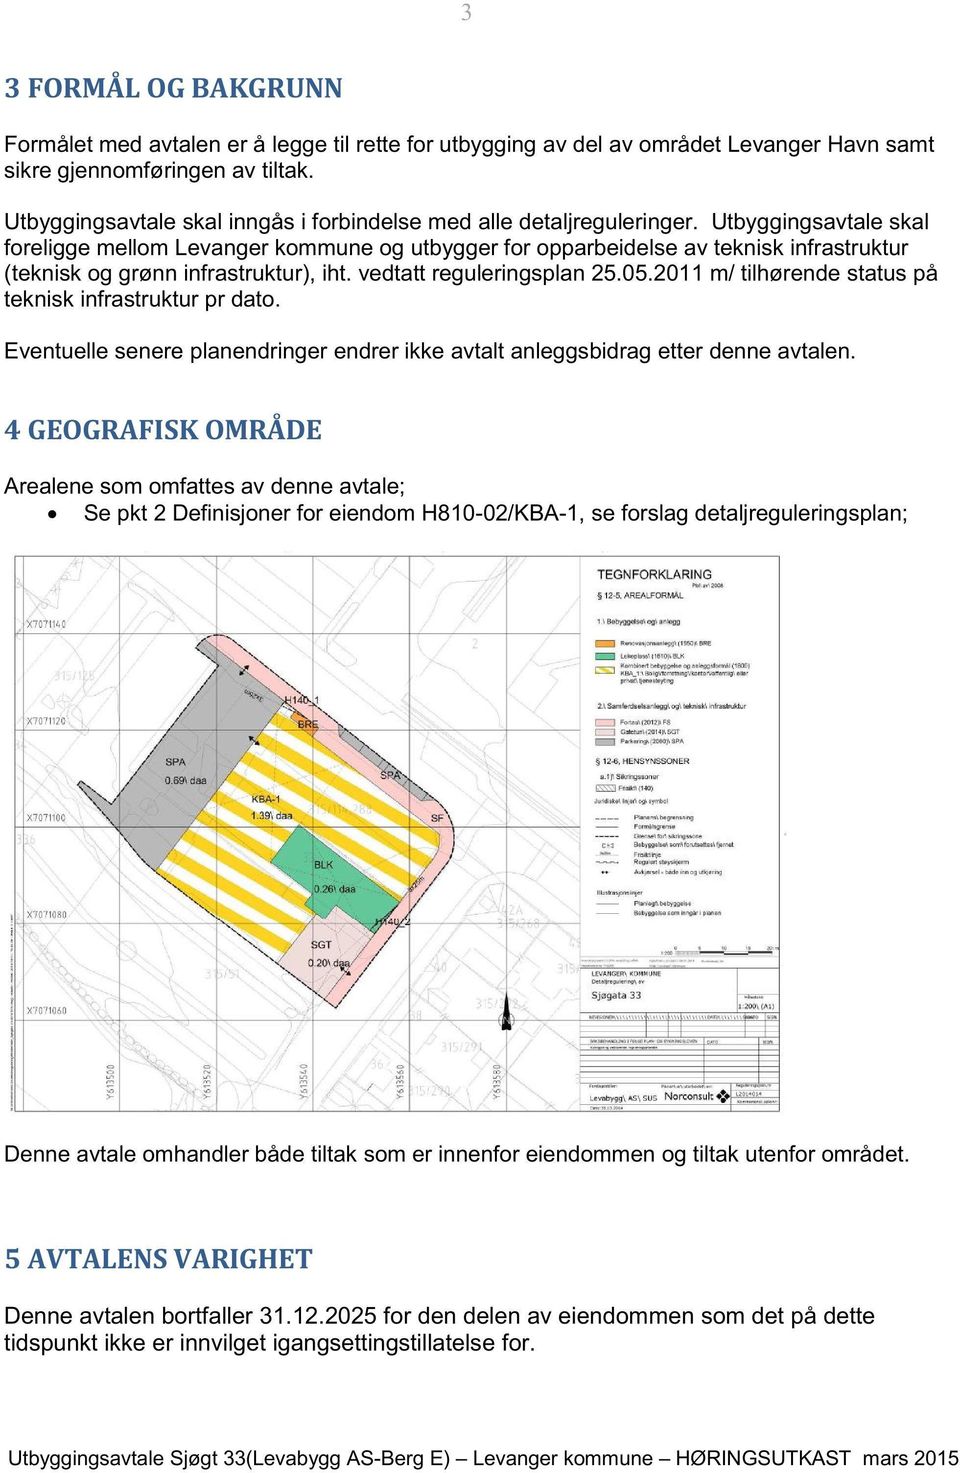 Utbyggingsavtale skal foreligge mellom Levanger kommune og utbygger for opparbeidelse av teknisk infrastruktur (teknisk og grønn infrastruktur), iht. vedtatt reguleringsplan 25.05.